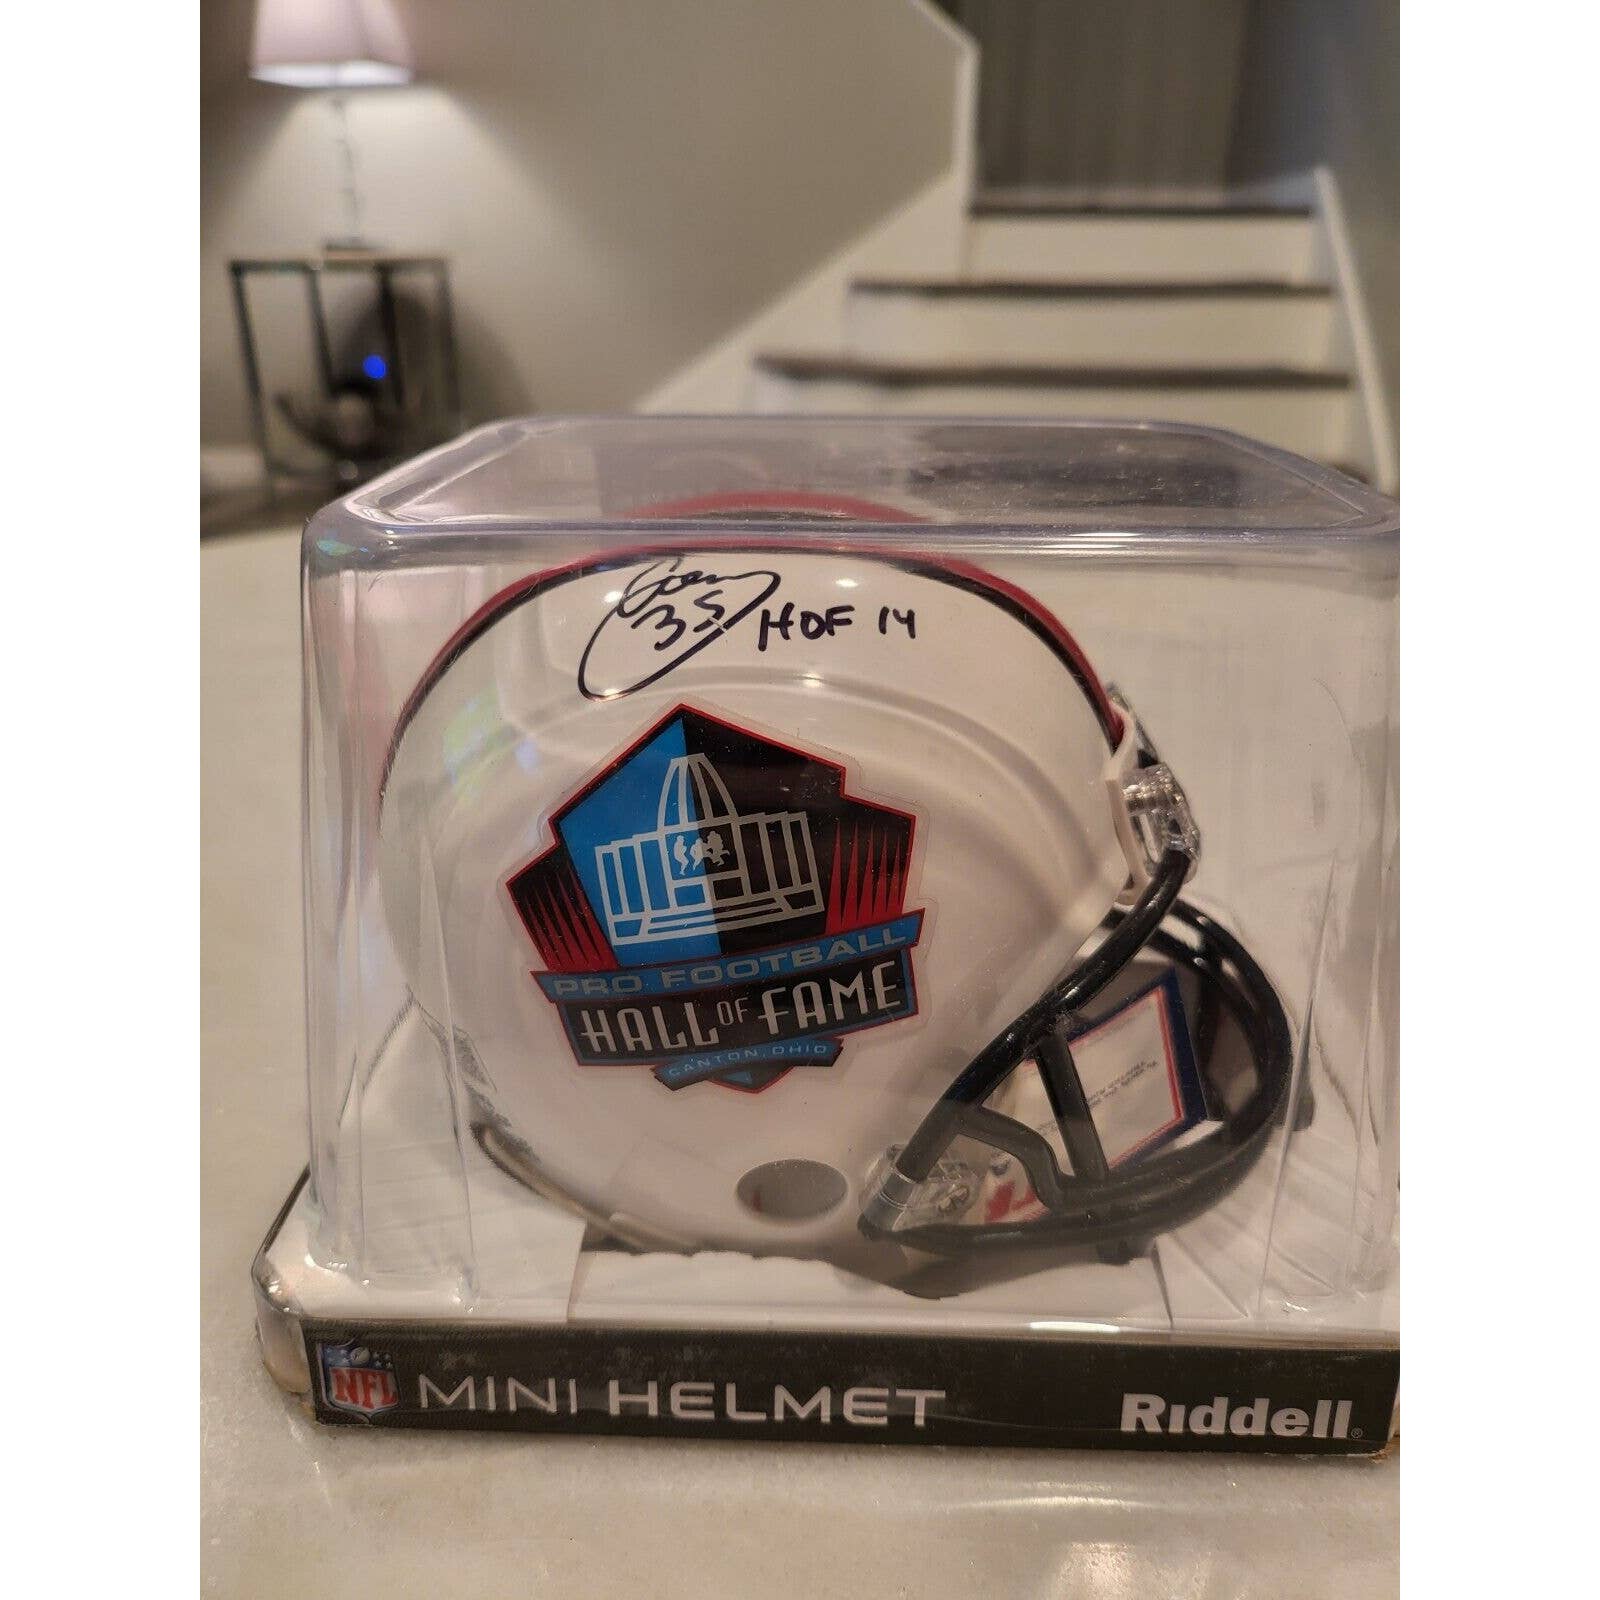 Aeneas Williams Autographed/Signed Mini Helmet TRISTAR Rams Cardinals HOF - TreasuresEvolved